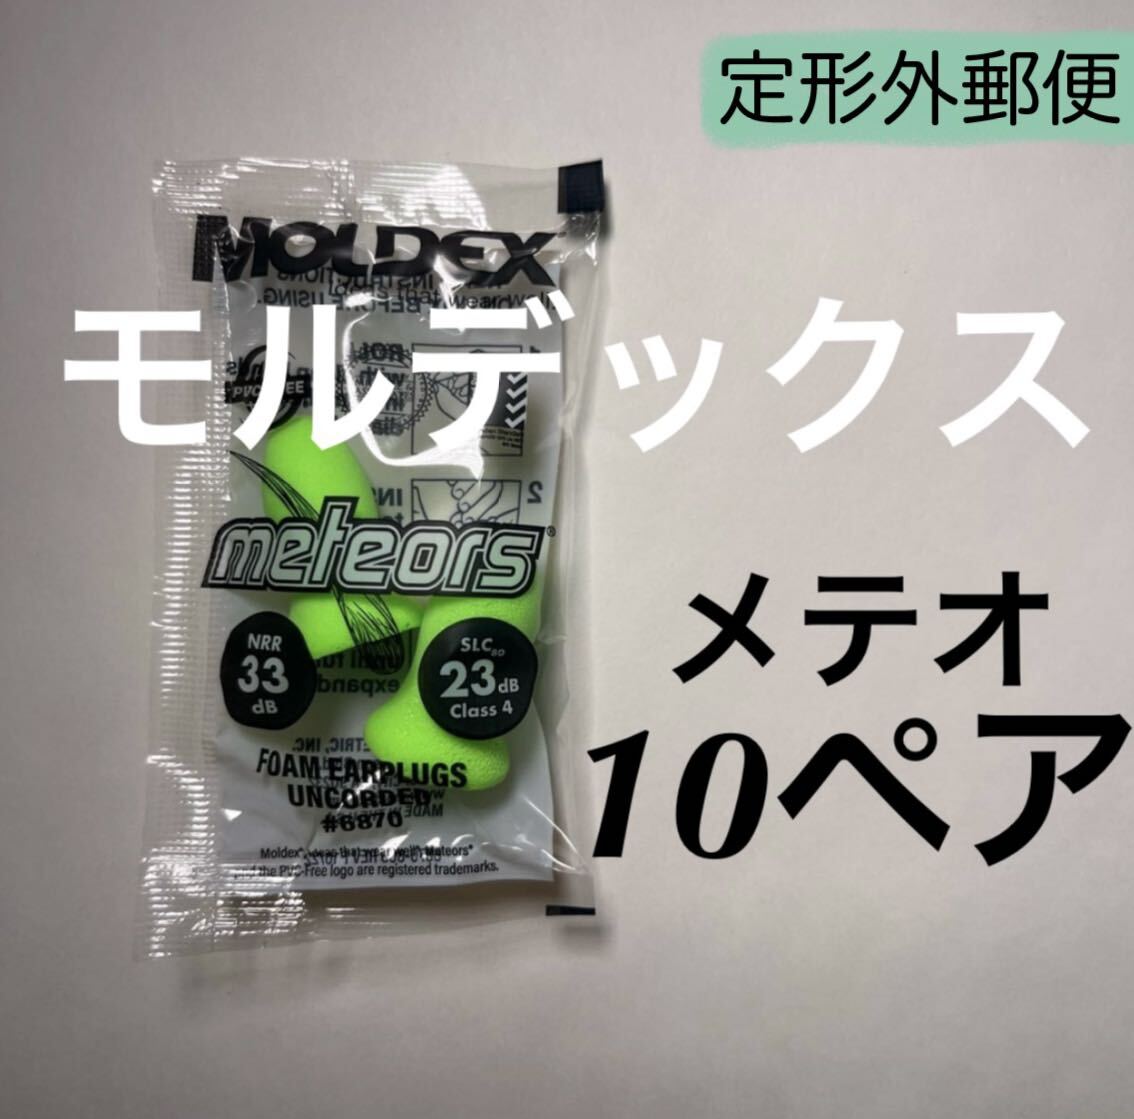 正規品 モルデックス メテオ 10ペア 耳栓 MOLDEX 定形外郵便発送の画像1